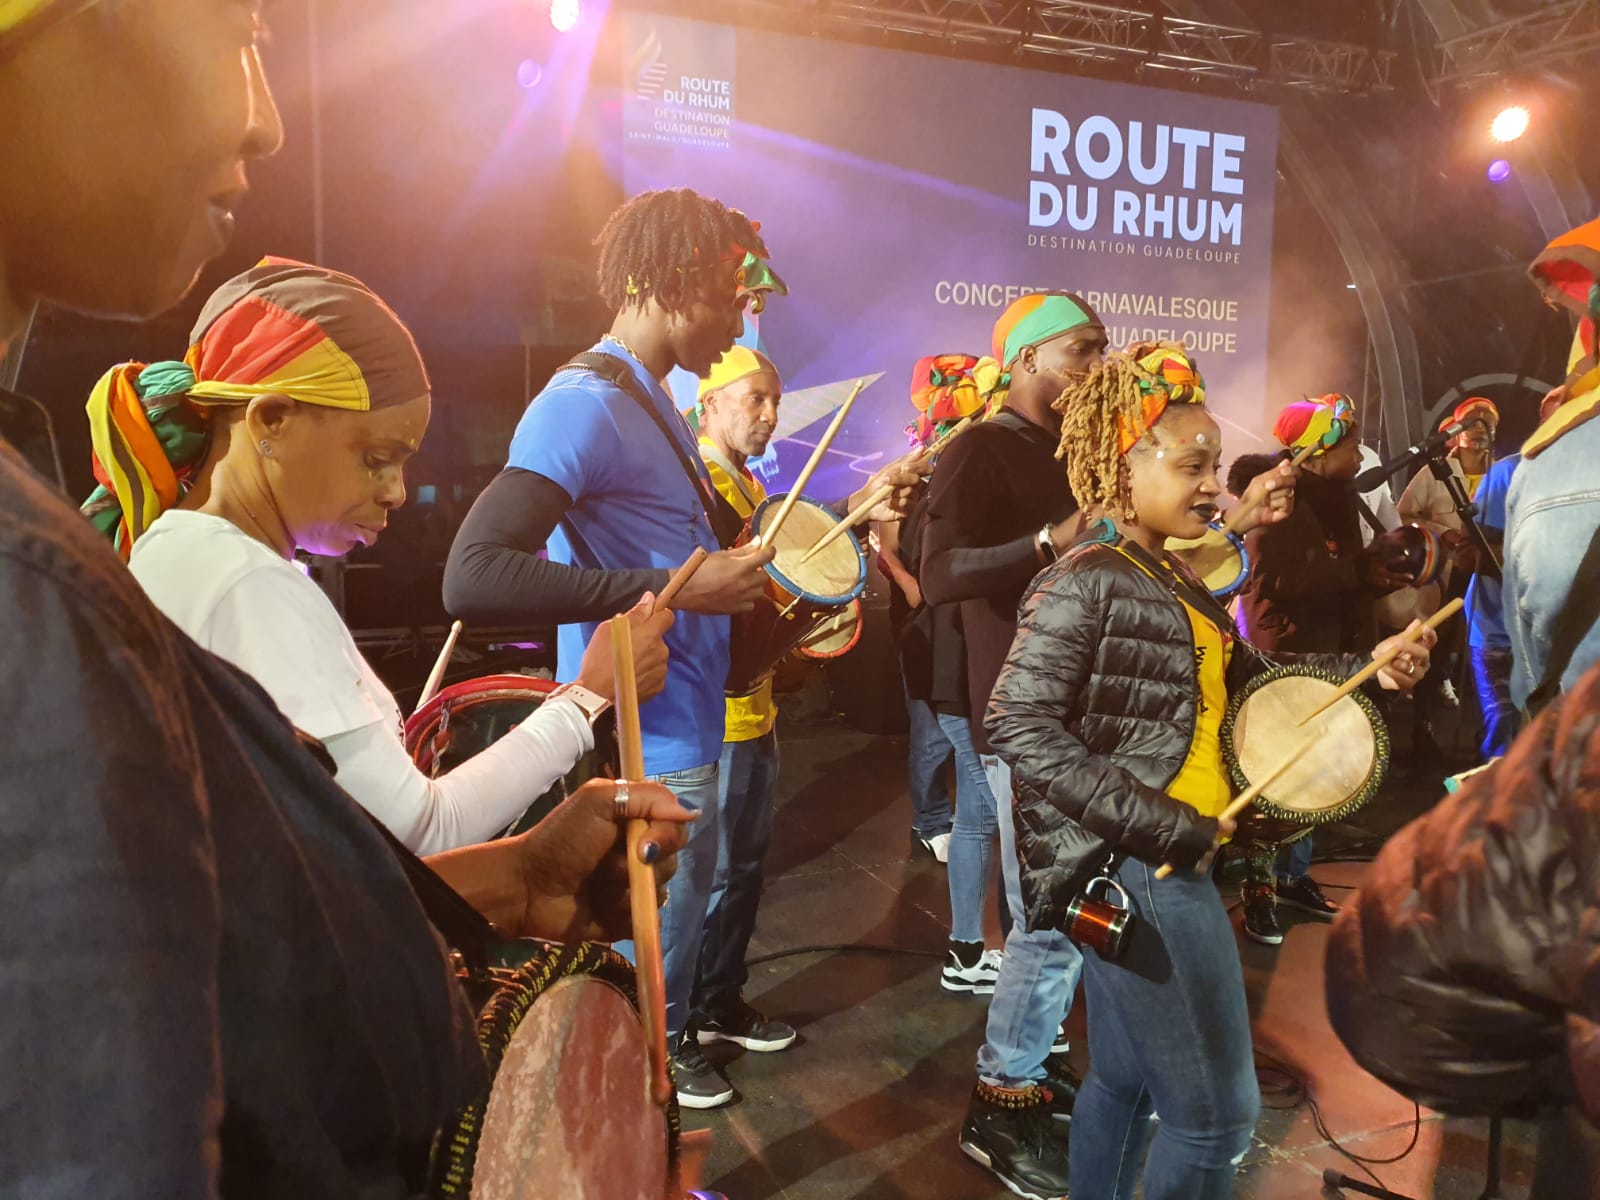     Route du Rhum : le carnaval de Guadeloupe s'invite à Saint-Malo 

